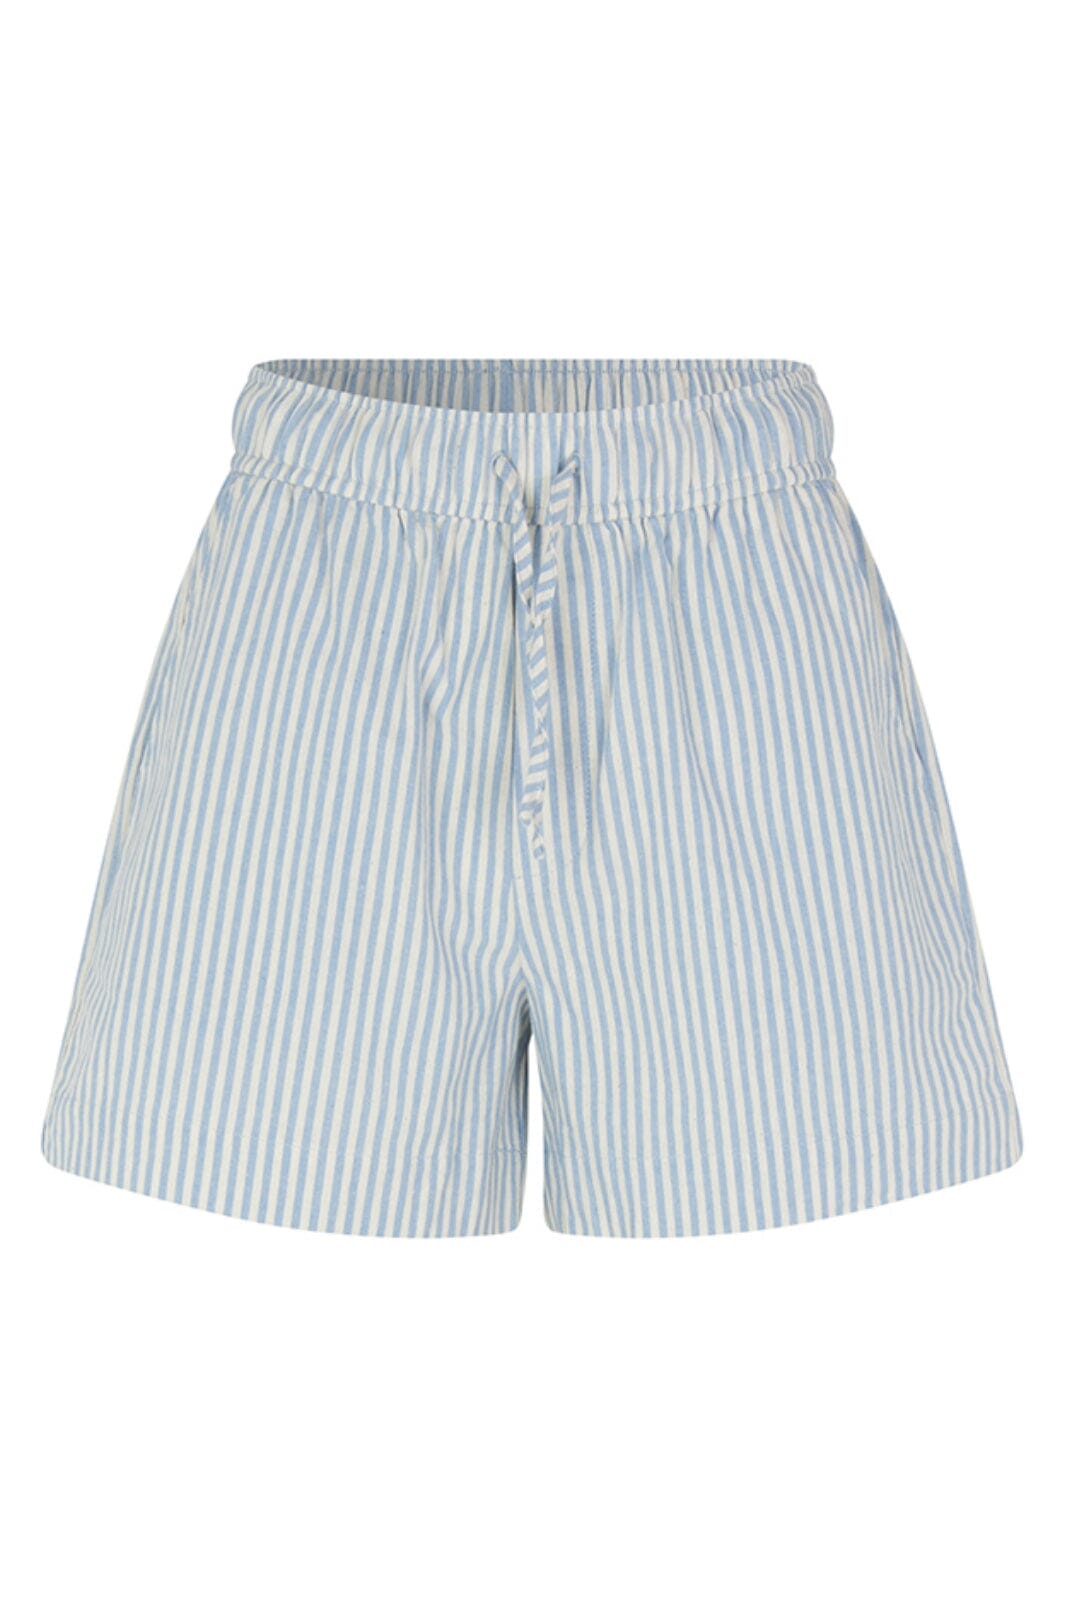 MbyM - Meris-M - Blue Sugar Stripe Shorts 